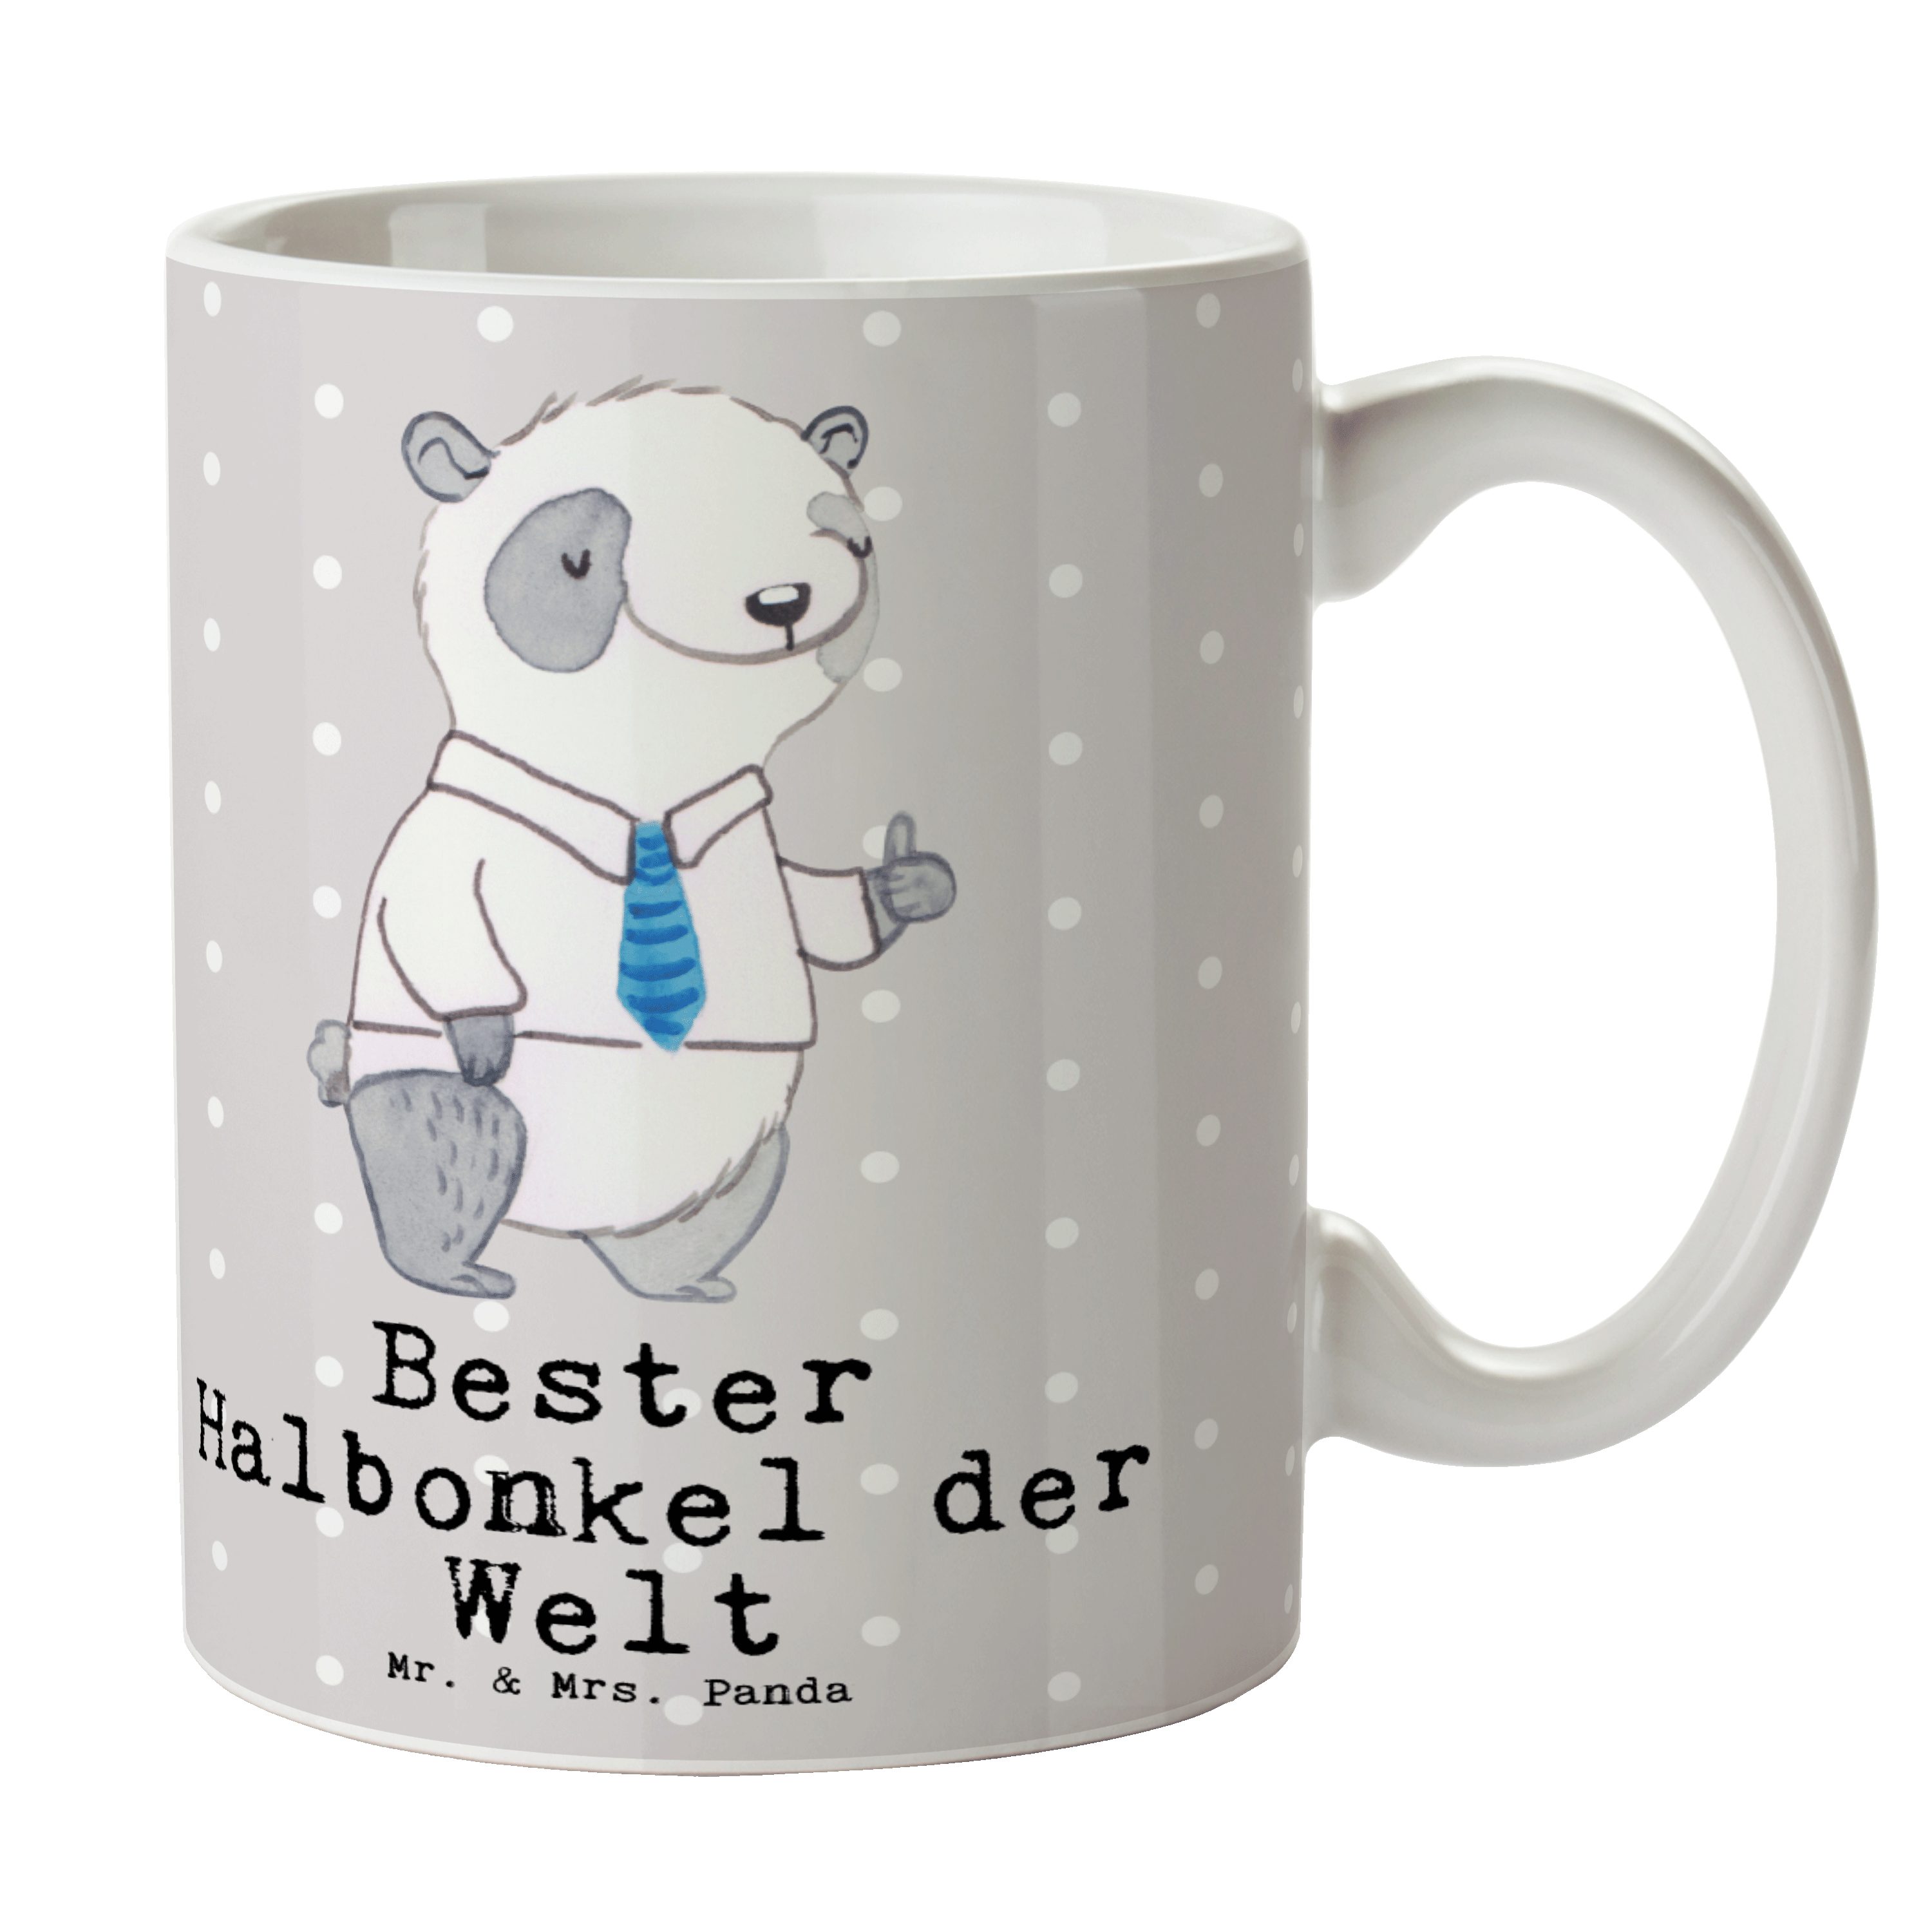 Halbonkel - Panda Grau Panda Tasse Geschenk, Pastell - Mrs. der Kleinigkei, Bester Welt Mr. & Keramik